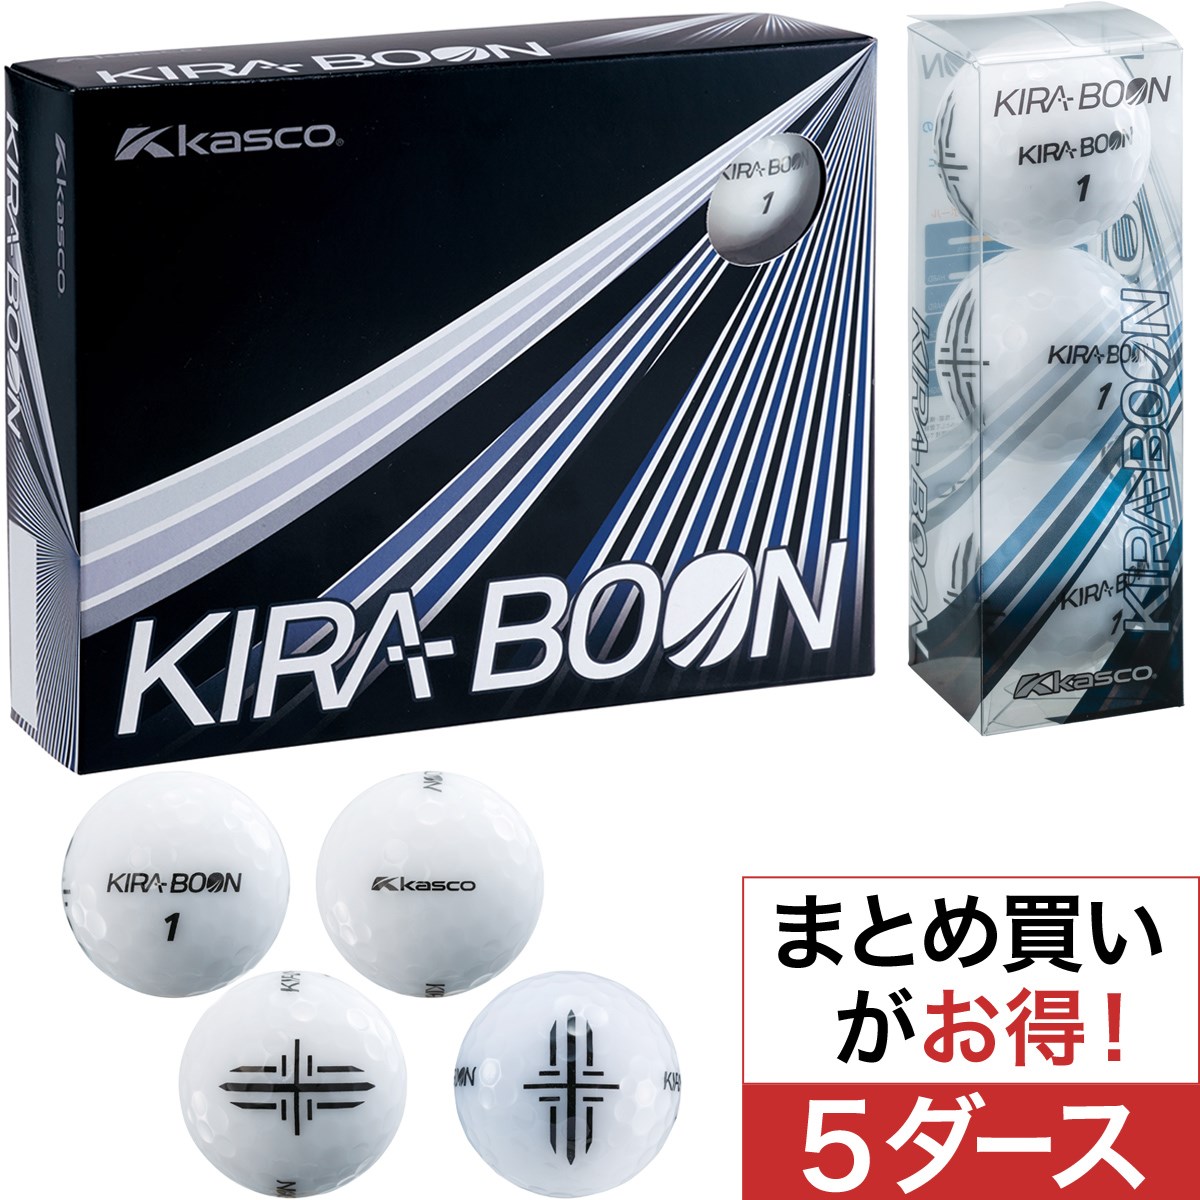 キャスコ(KASCO) KIRA BOON 矢印ターゲットマーク ボール 5ダースセット 